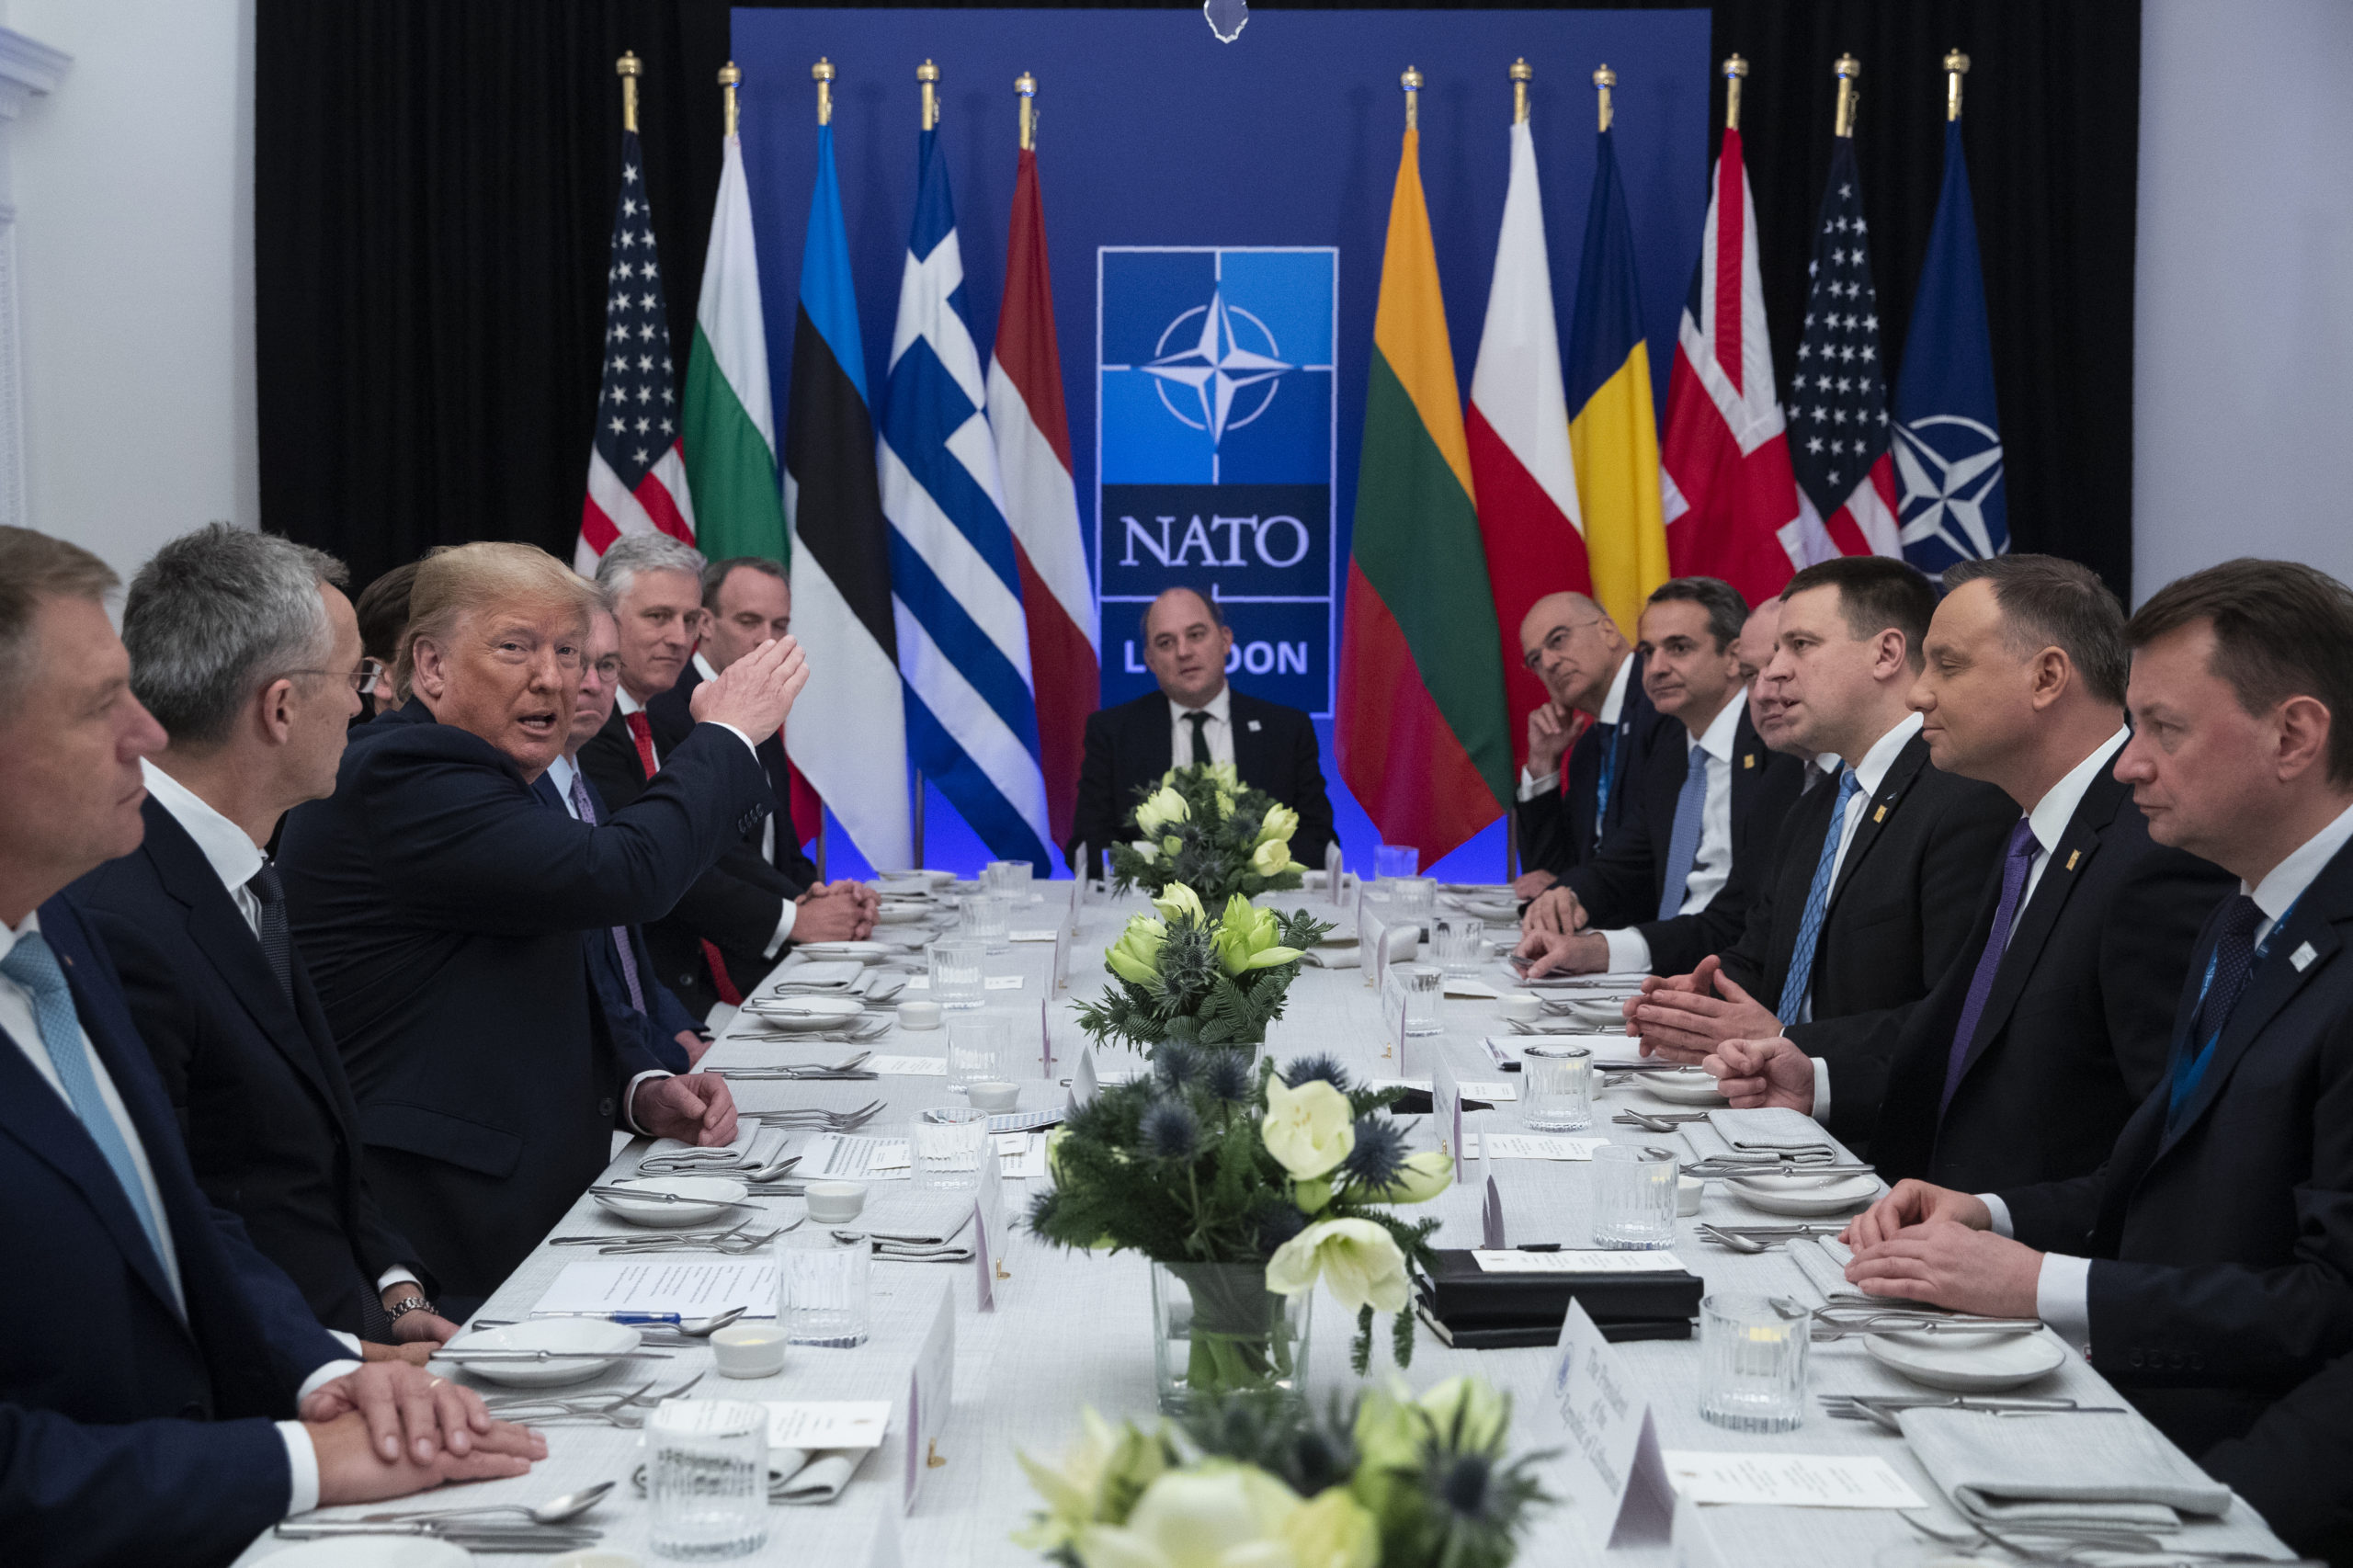 Жители нато. Североатлантический Альянс НАТО. NATO (North Atlantic Treaty Organization) - Североатлантический военный Альянс (НАТО).. Саммит НАТО 1999. Саммит Альянса НАТО.